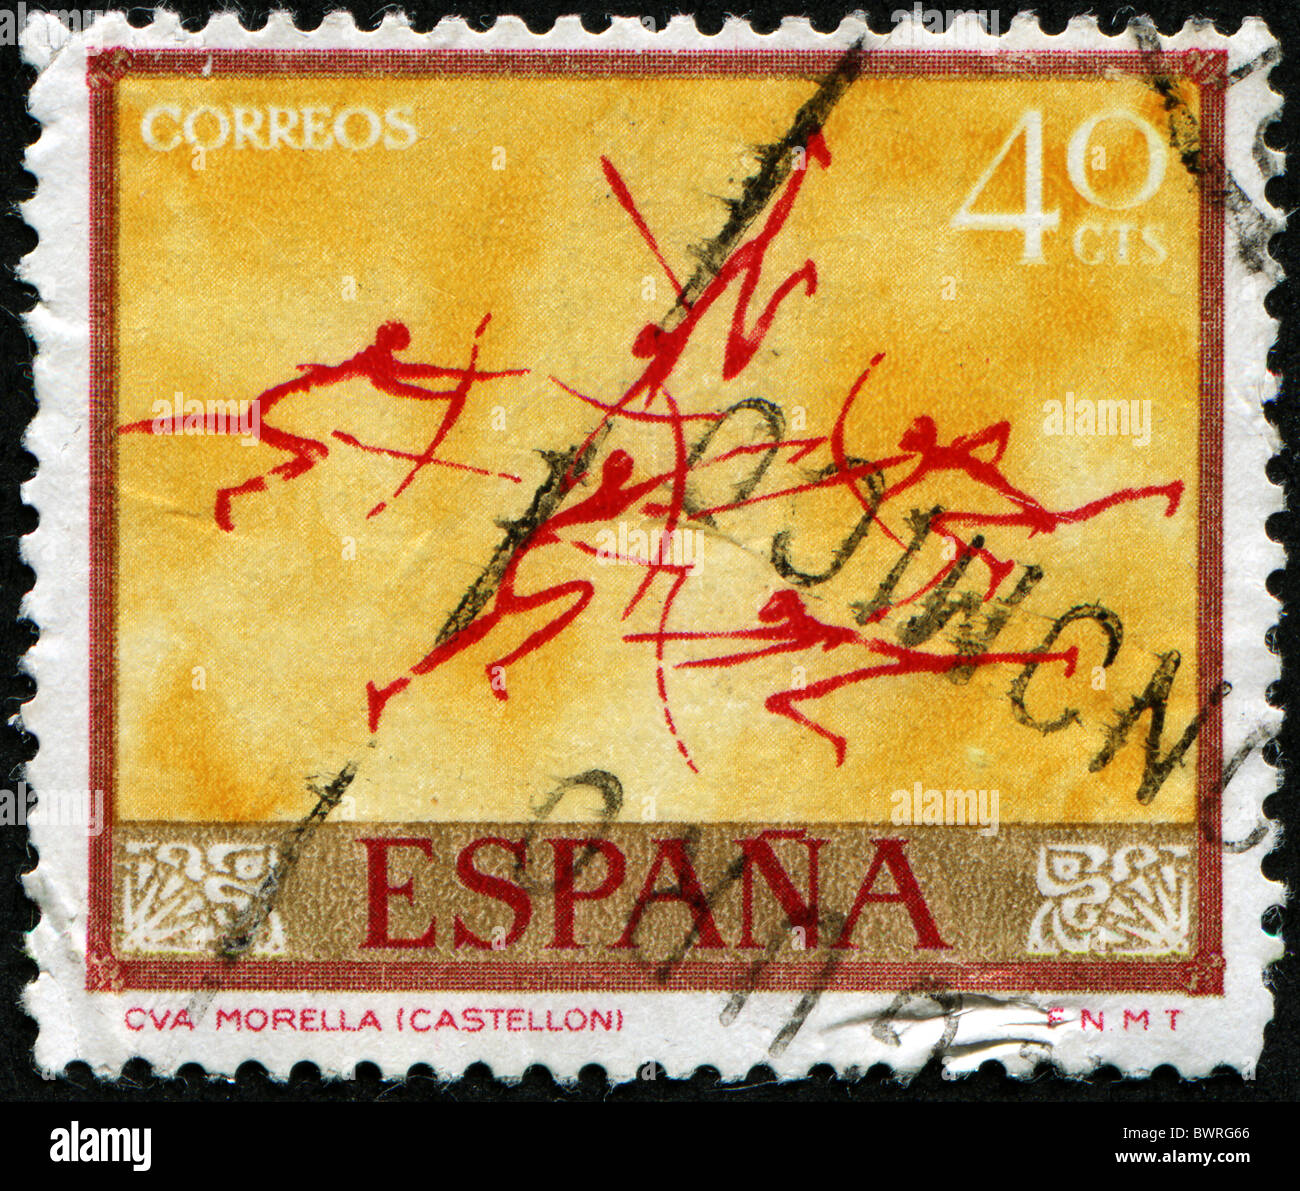 Espagne - circa 1974 : timbre imprimé en Espagne montre l'art préhistorique à Morella - Castellon, circa 1974 Banque D'Images